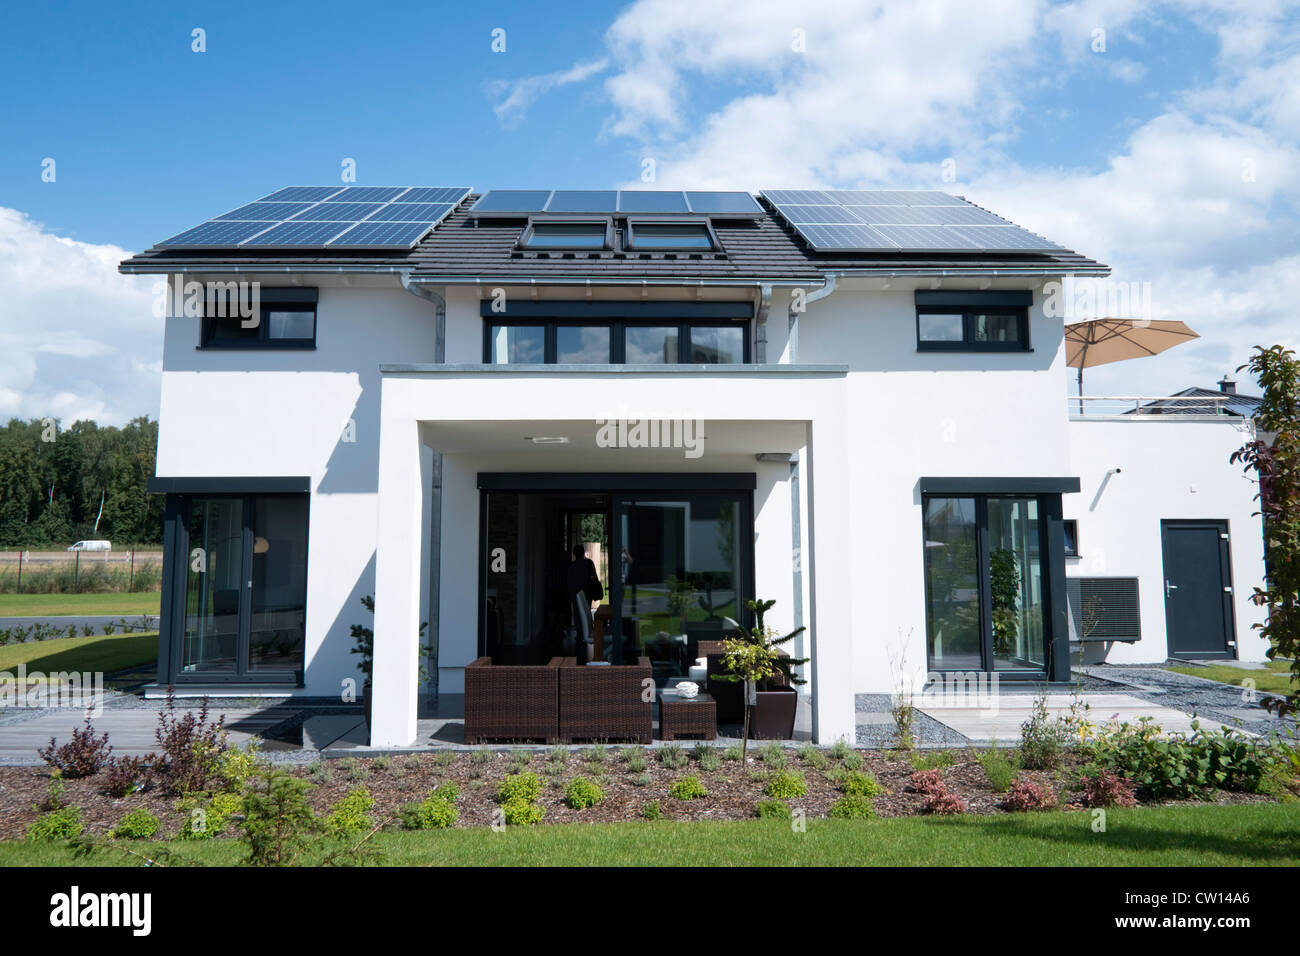 Haute efficacité énergétique moderne maison de famille avec des panneaux solaires sur le toit en Allemagne Banque D'Images